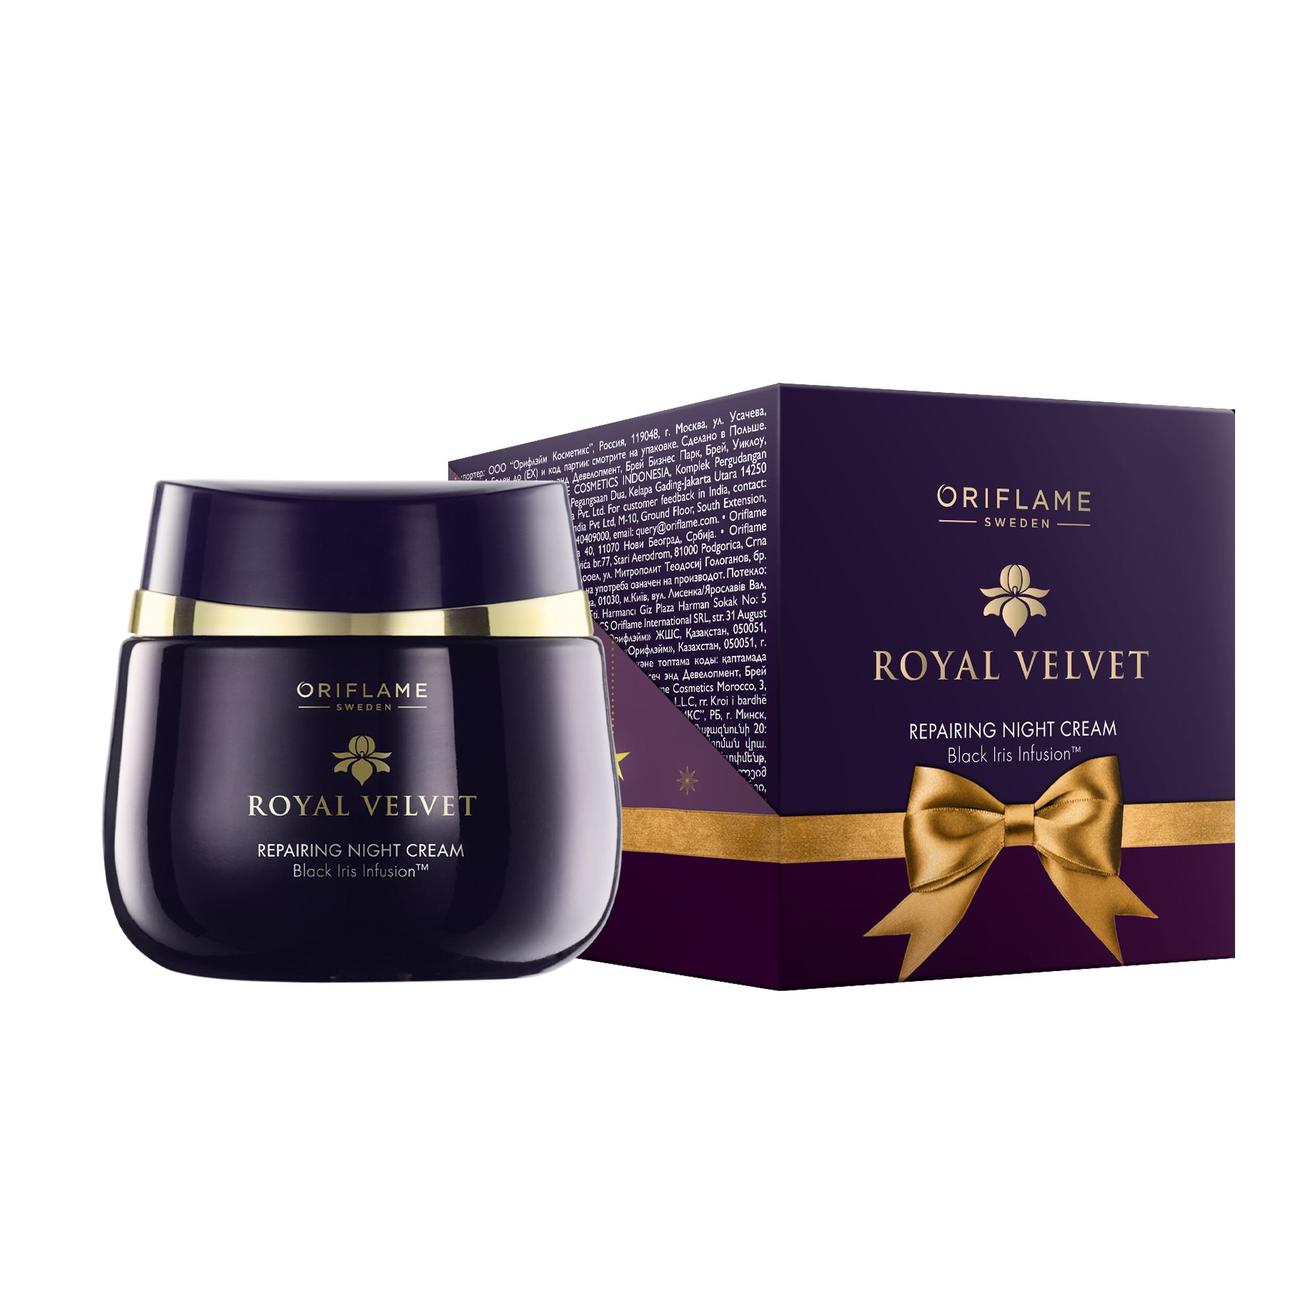 Προσφορά Limited-Edition Κρέμα Νύχτας Αποκατάστασης Royal Velvet για 13,99€ σε ORIFLAME